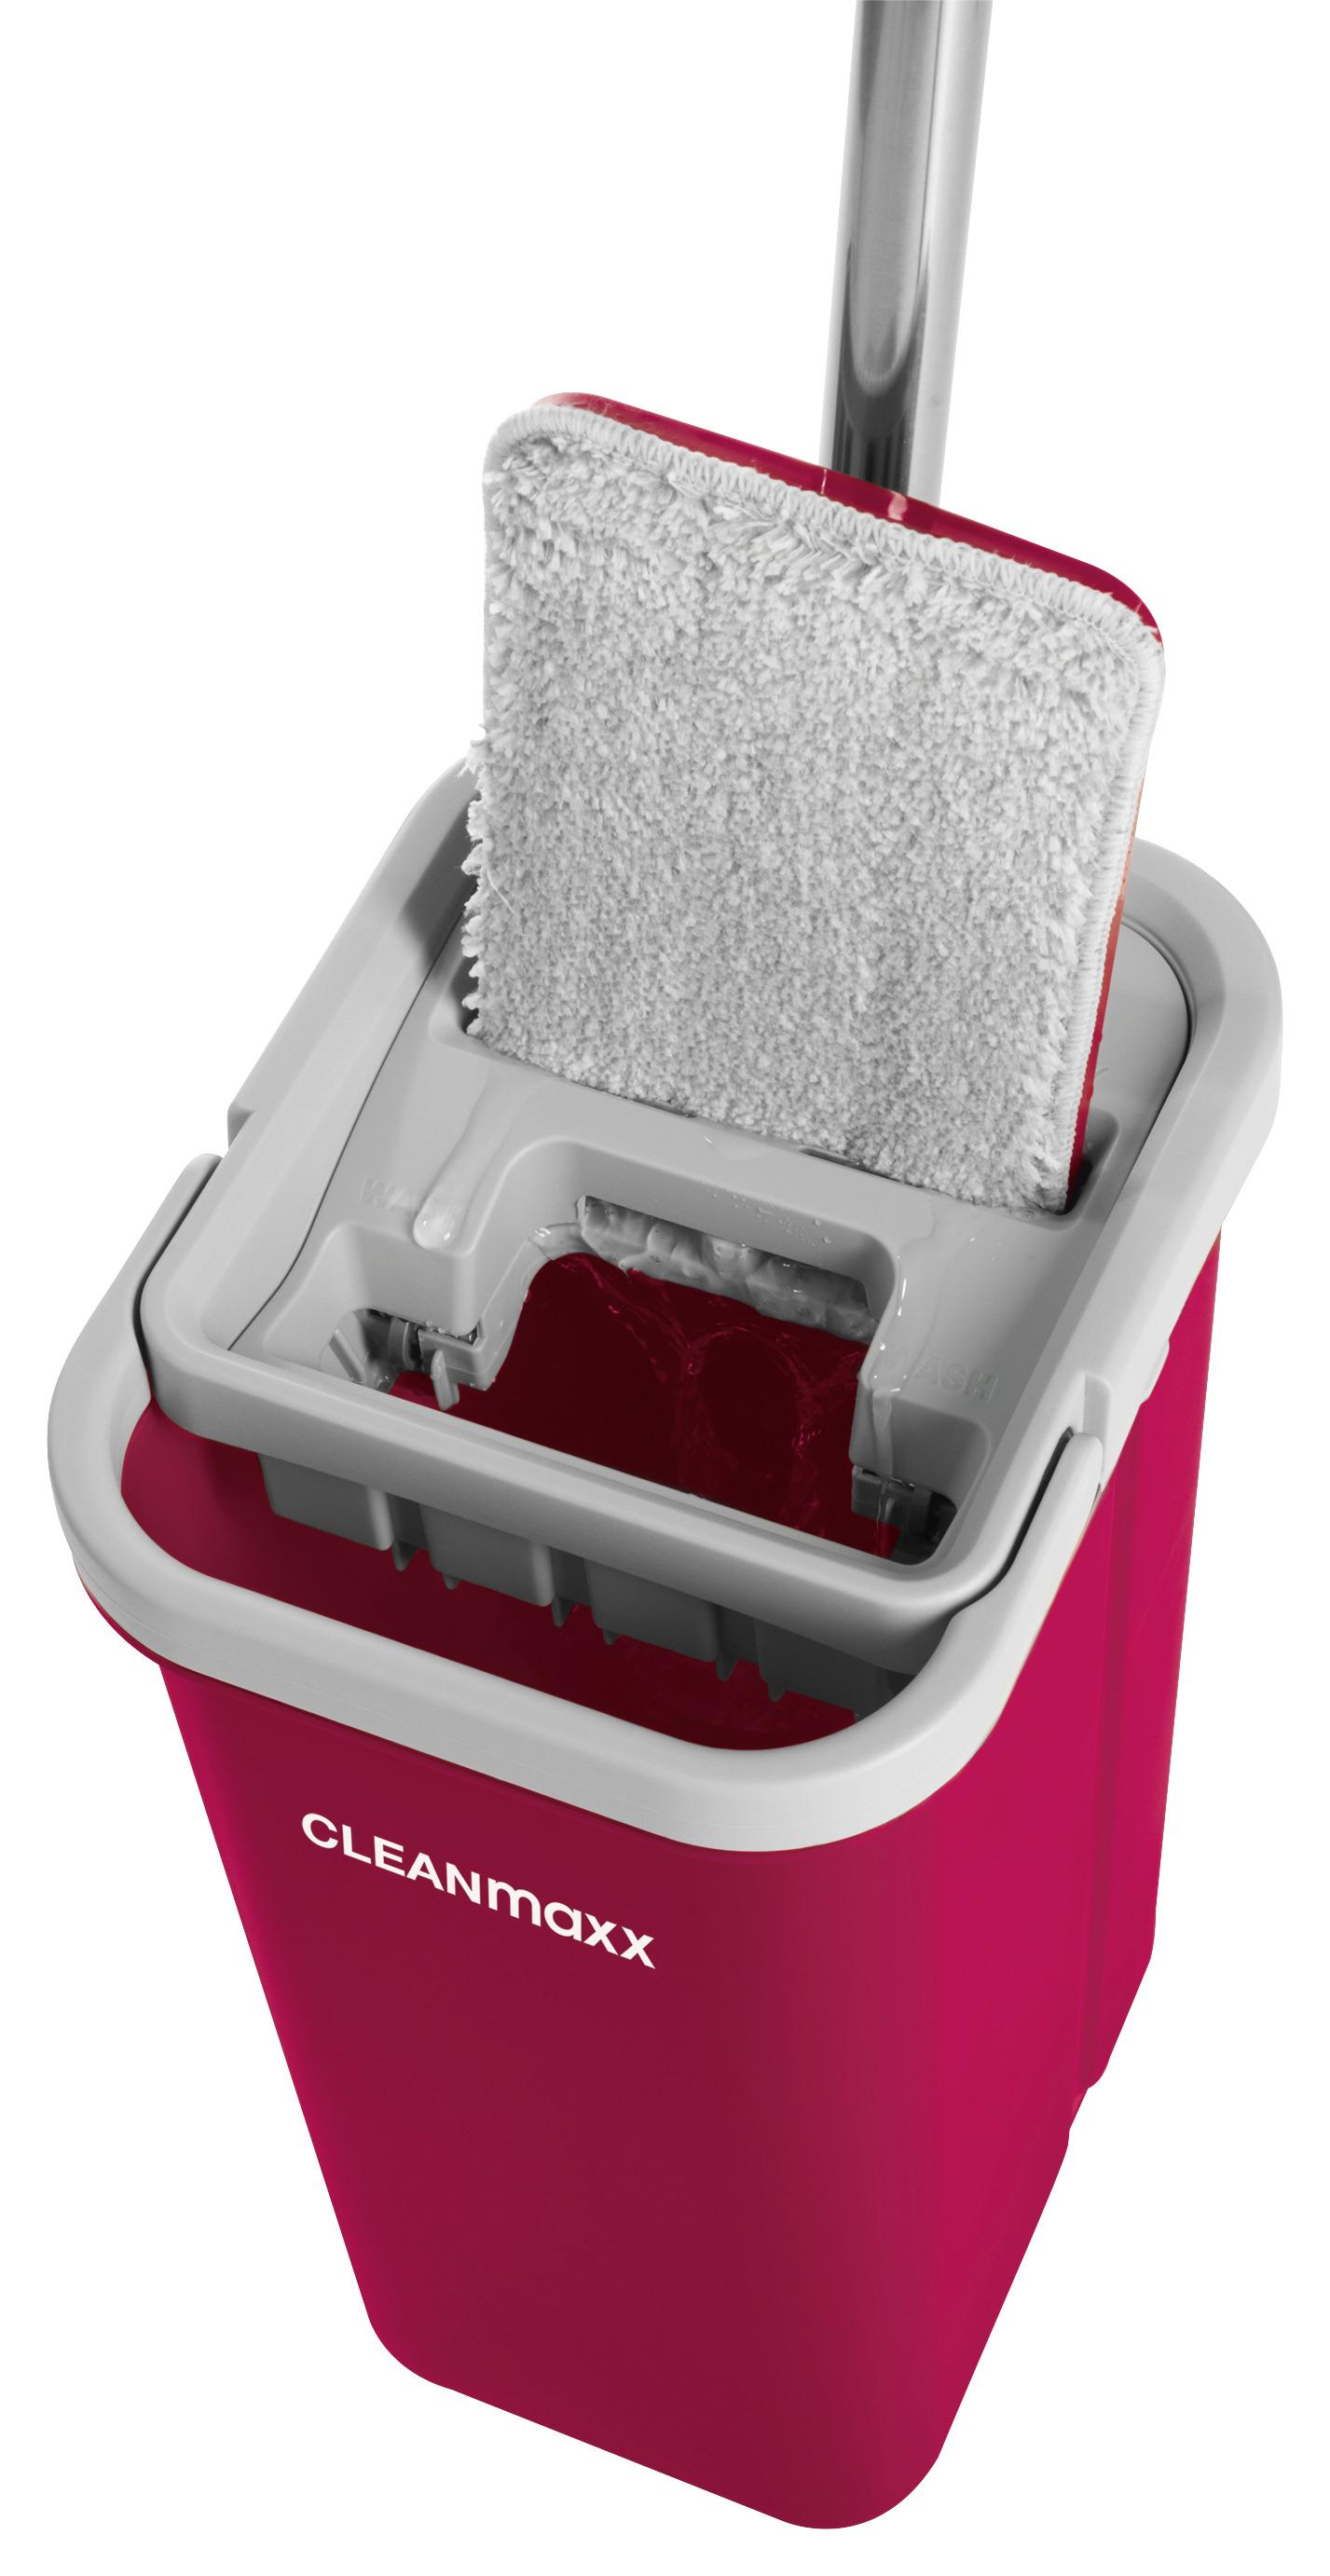 Bodenreinigungsset Cleanmaxx Komfort-Mopp - Rot, Basics, Kunststoff (19,9/15,0/125,5cm) - TV - Unser Original